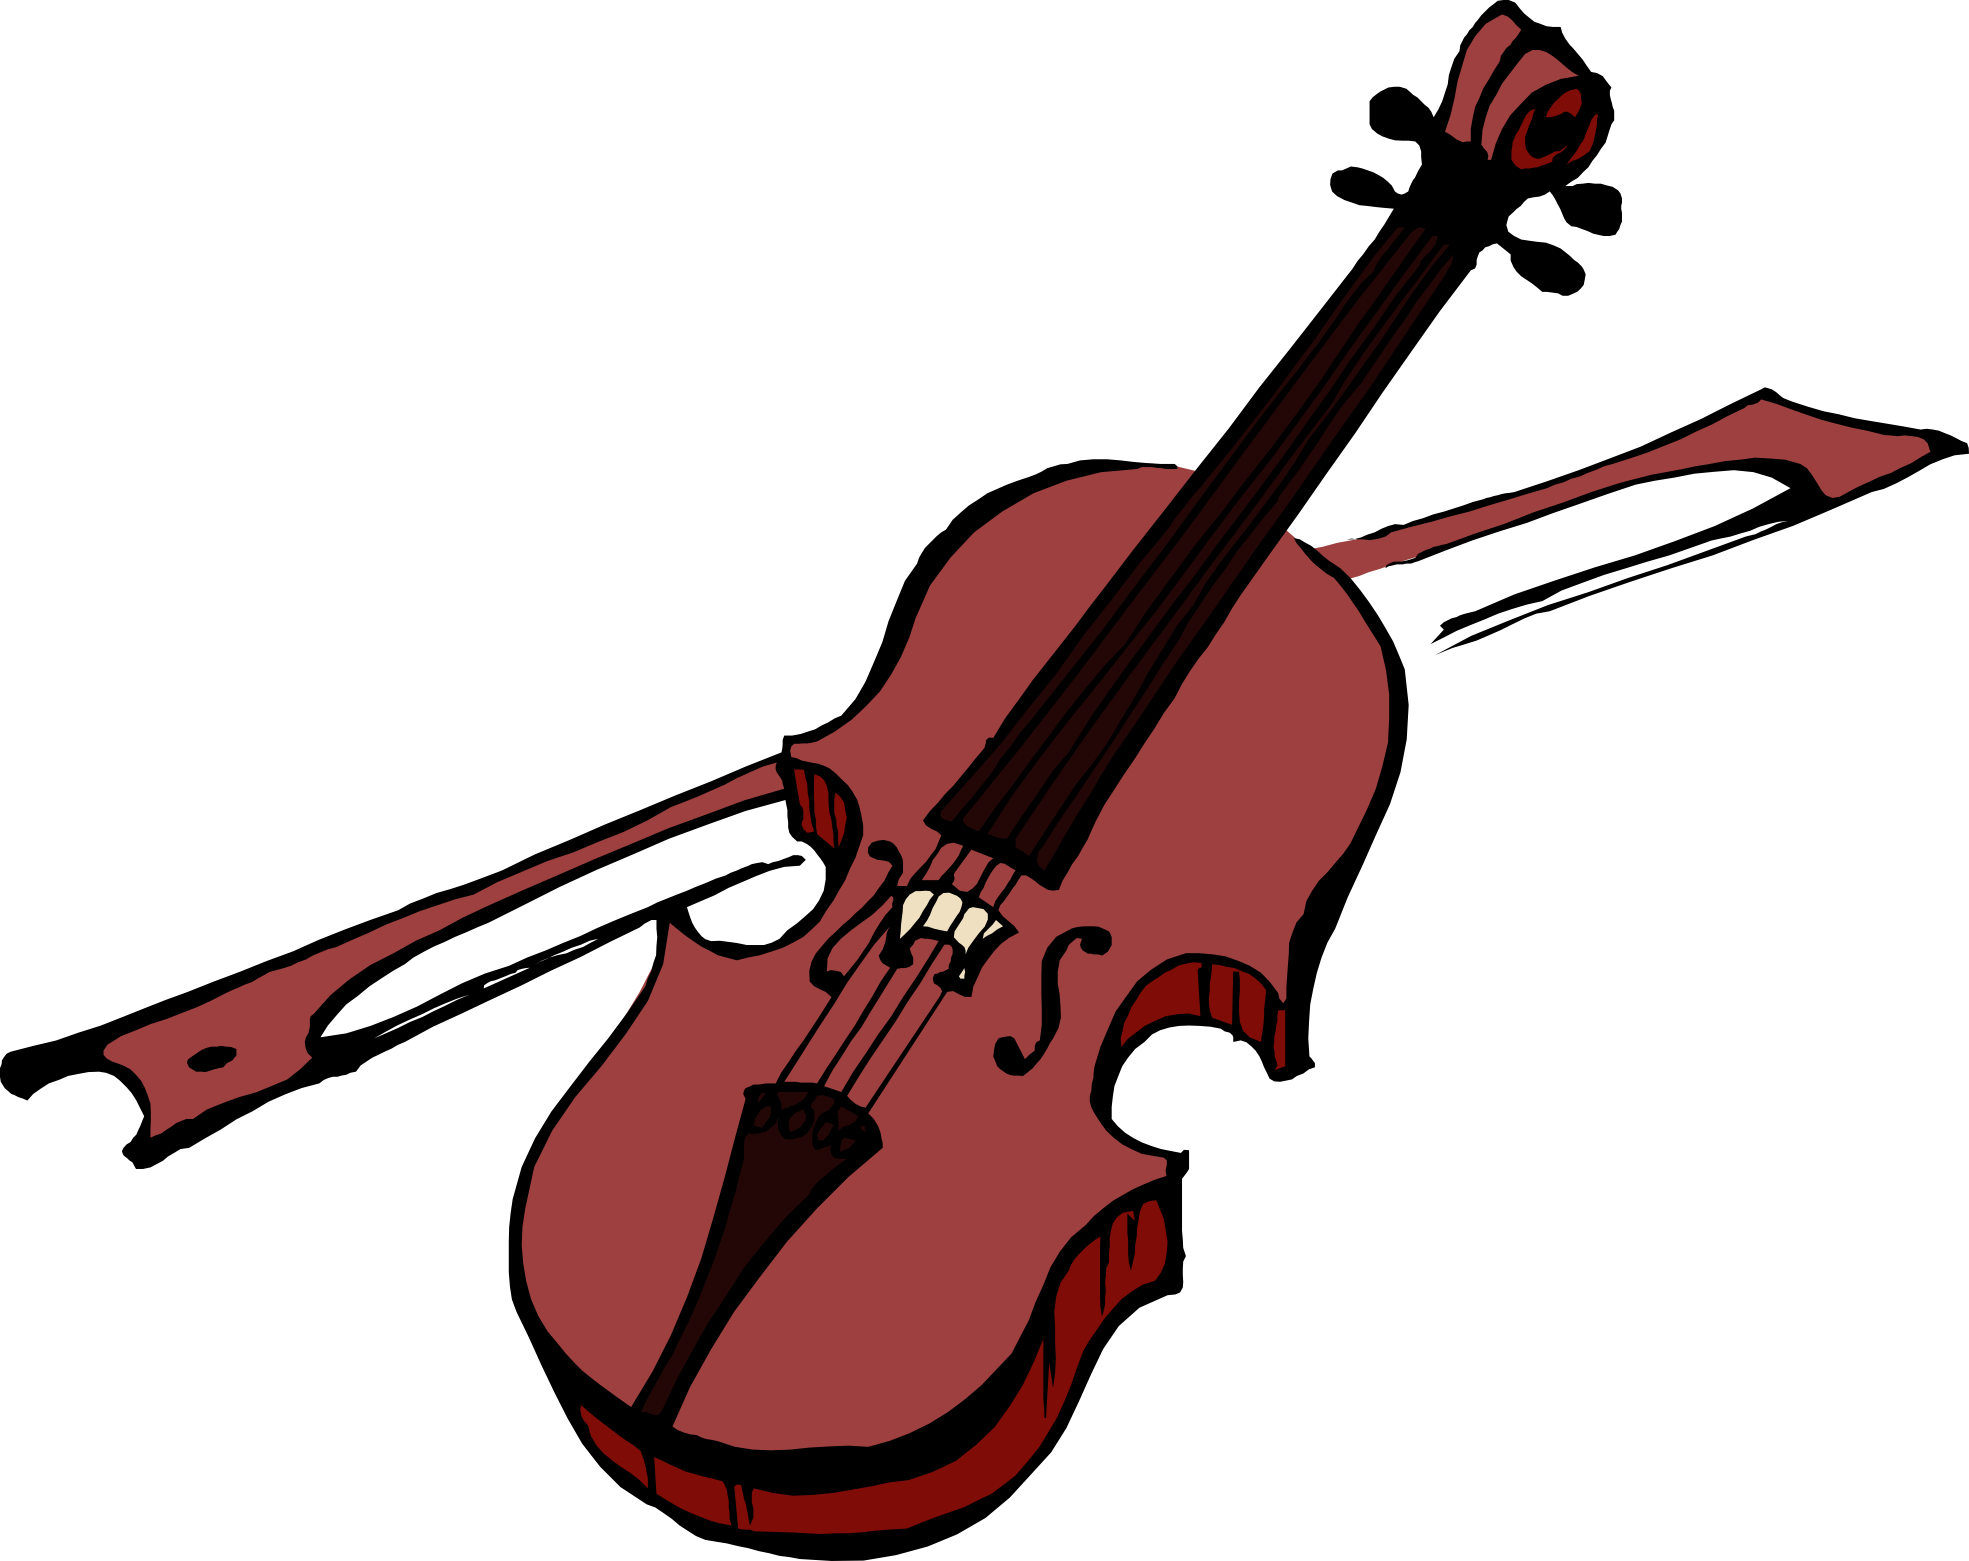 Viola Instrument PNG Image Background